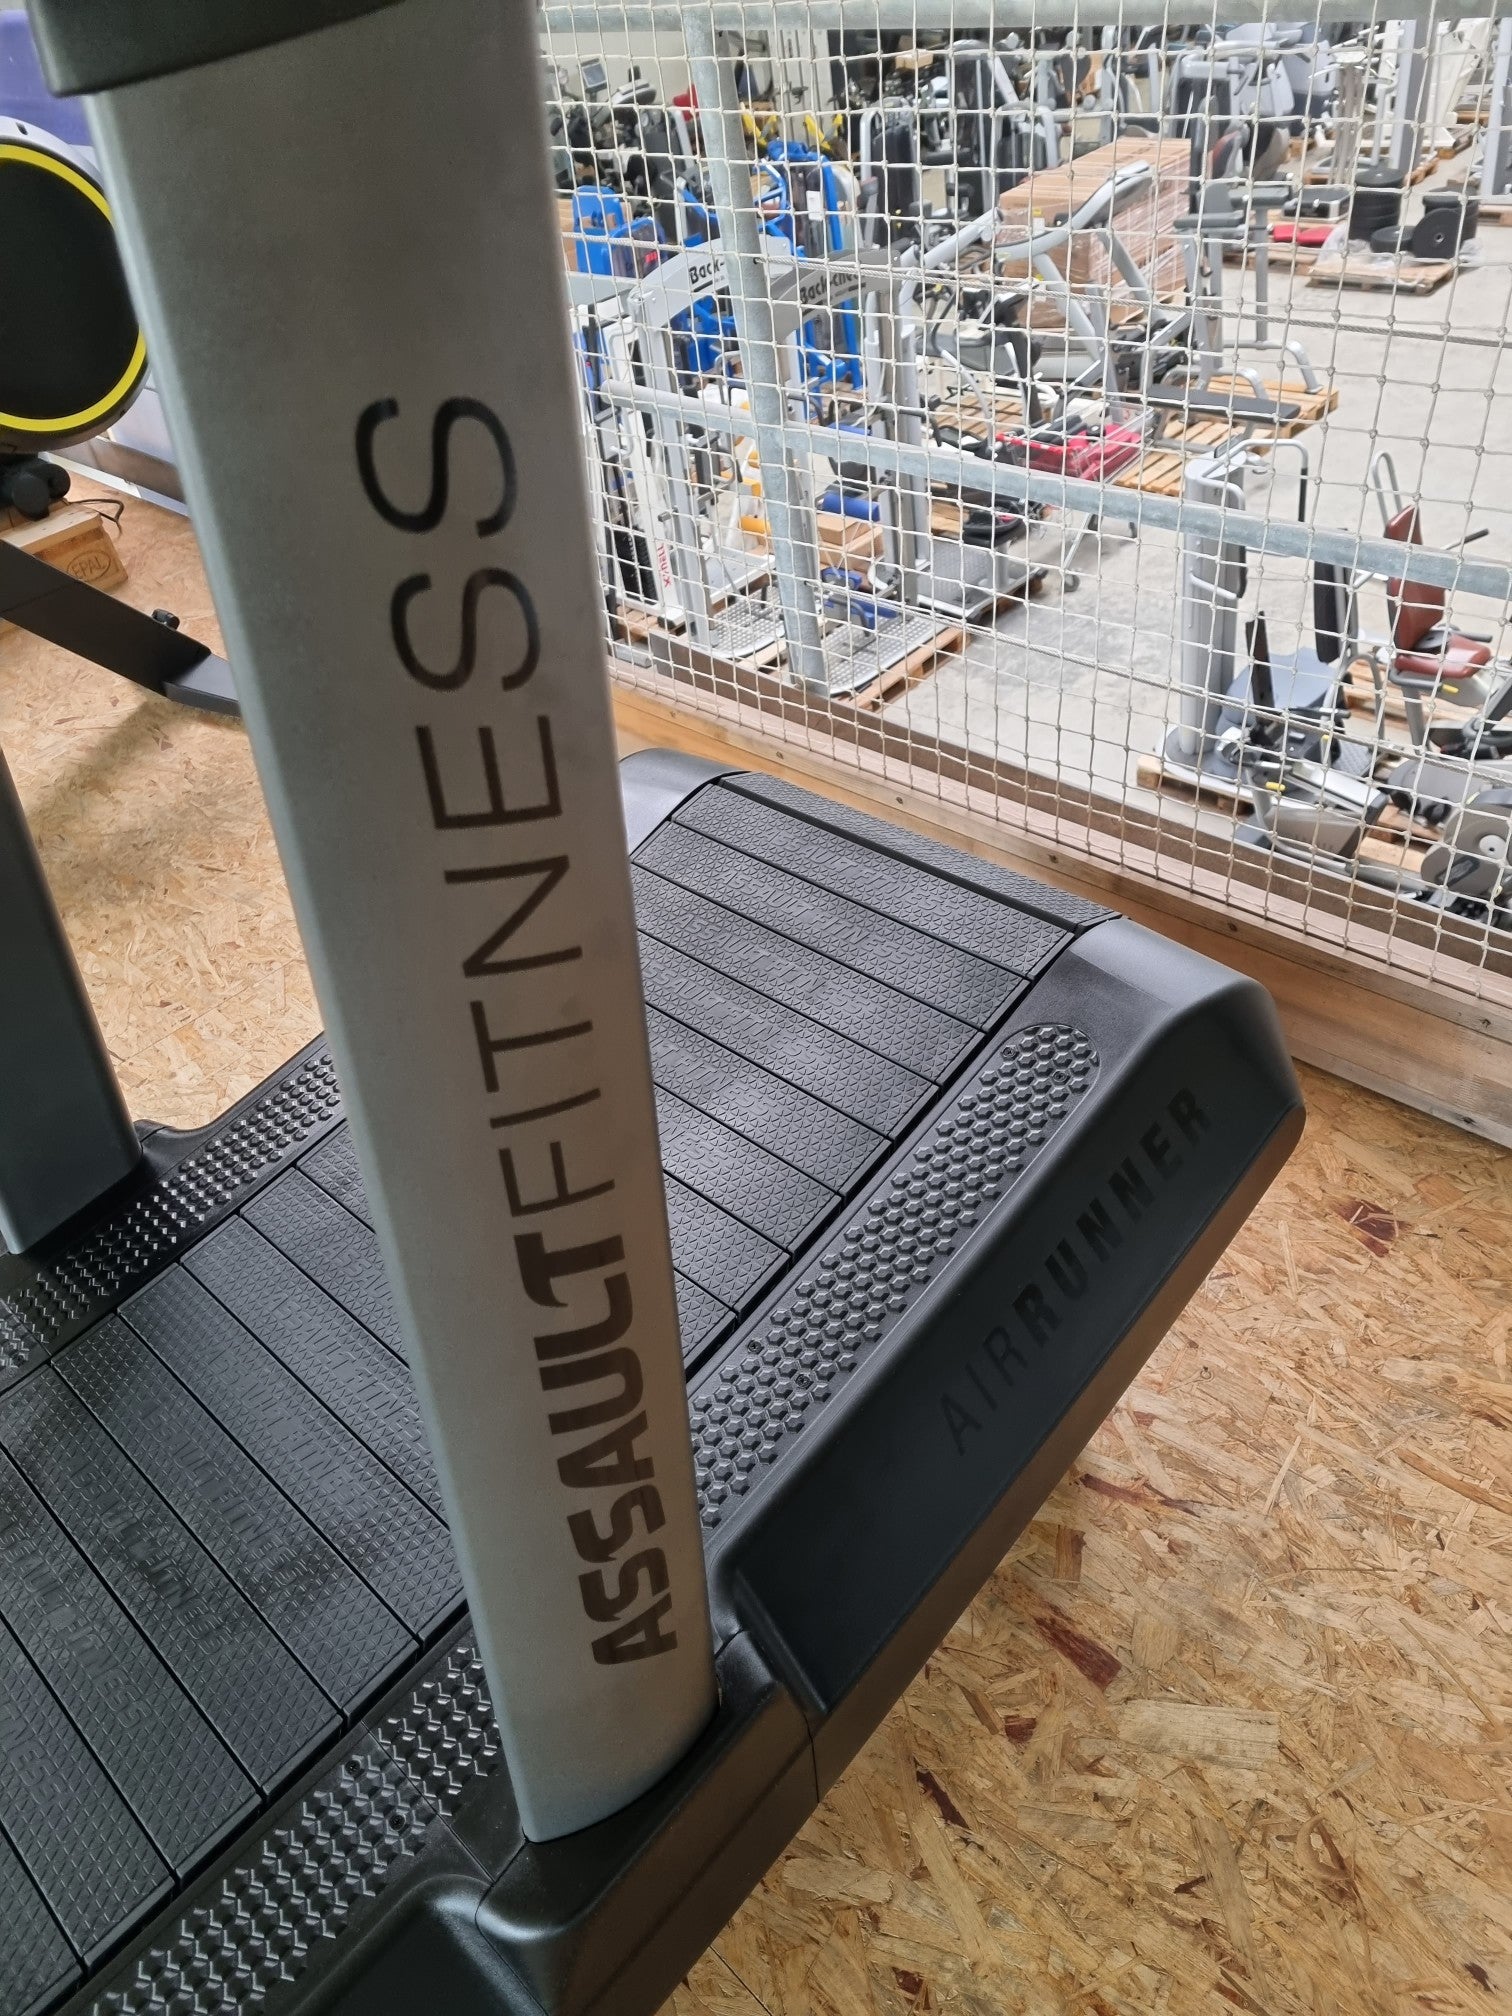 Assault Air Runner Curved Laufband NEU Treadmill Sprint Cardio Ausdauer Training Gym Fitness-Inserate.de